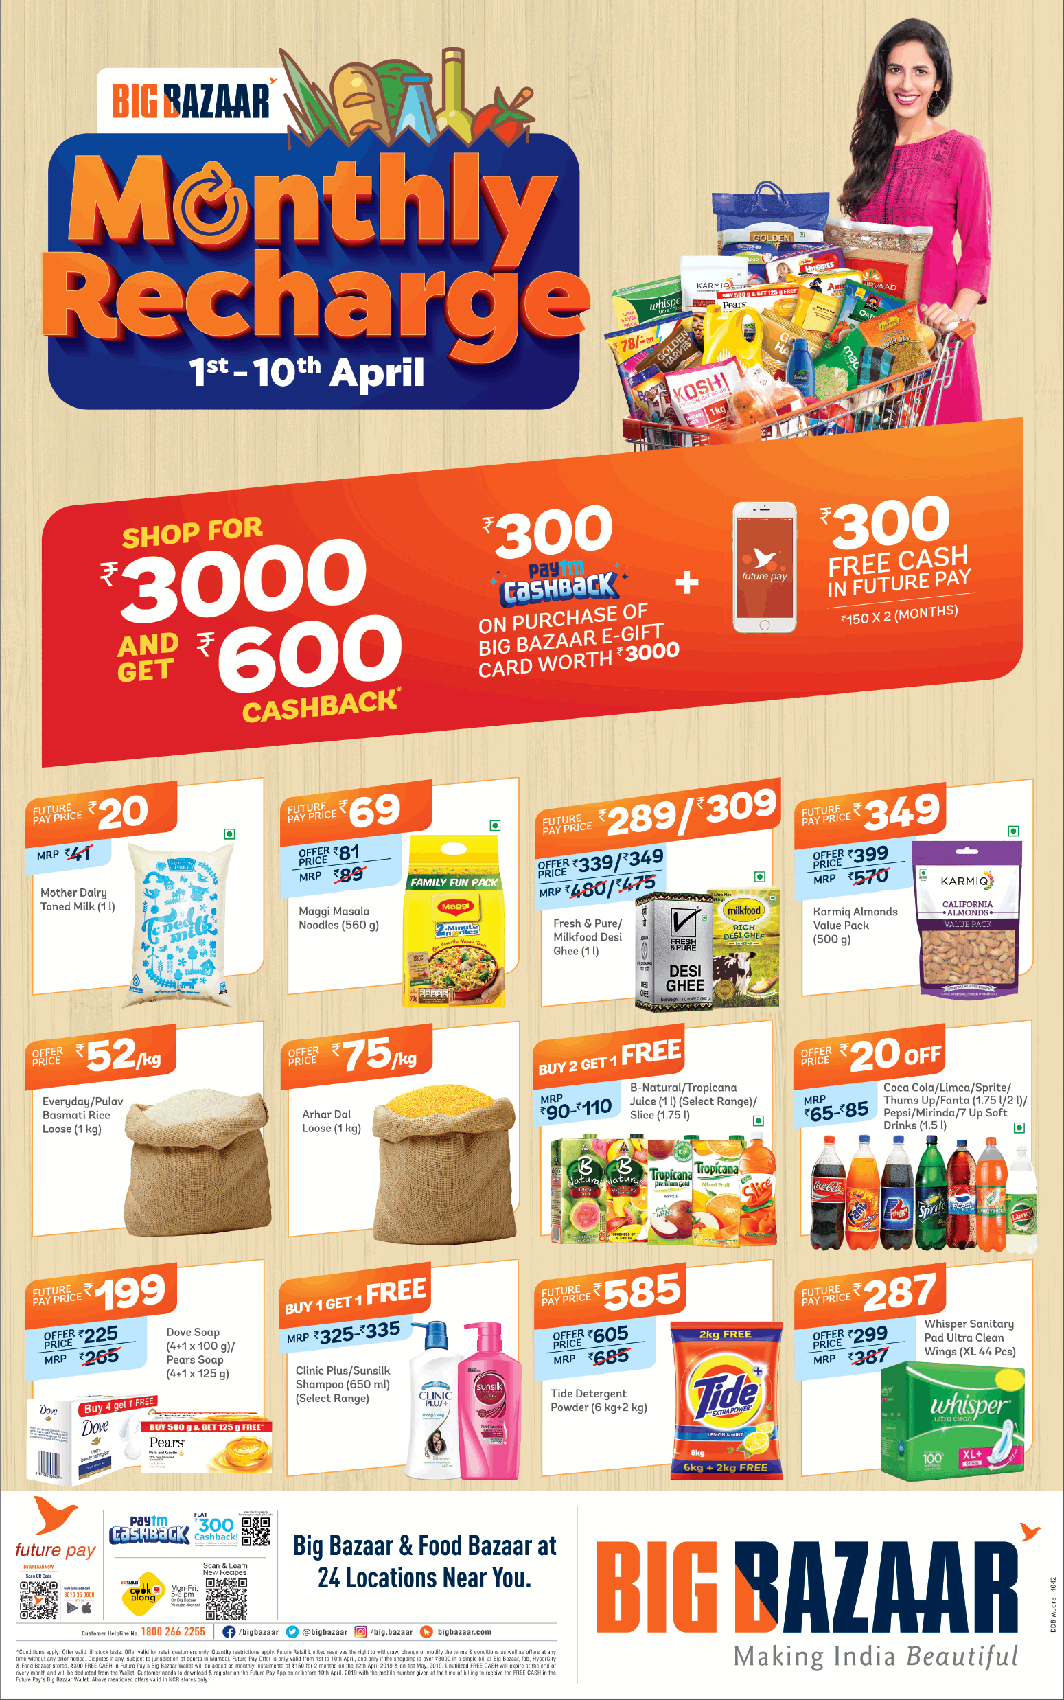 big-bazaar-monthly-recharge-ad-delhi-times-03-04-2019.png